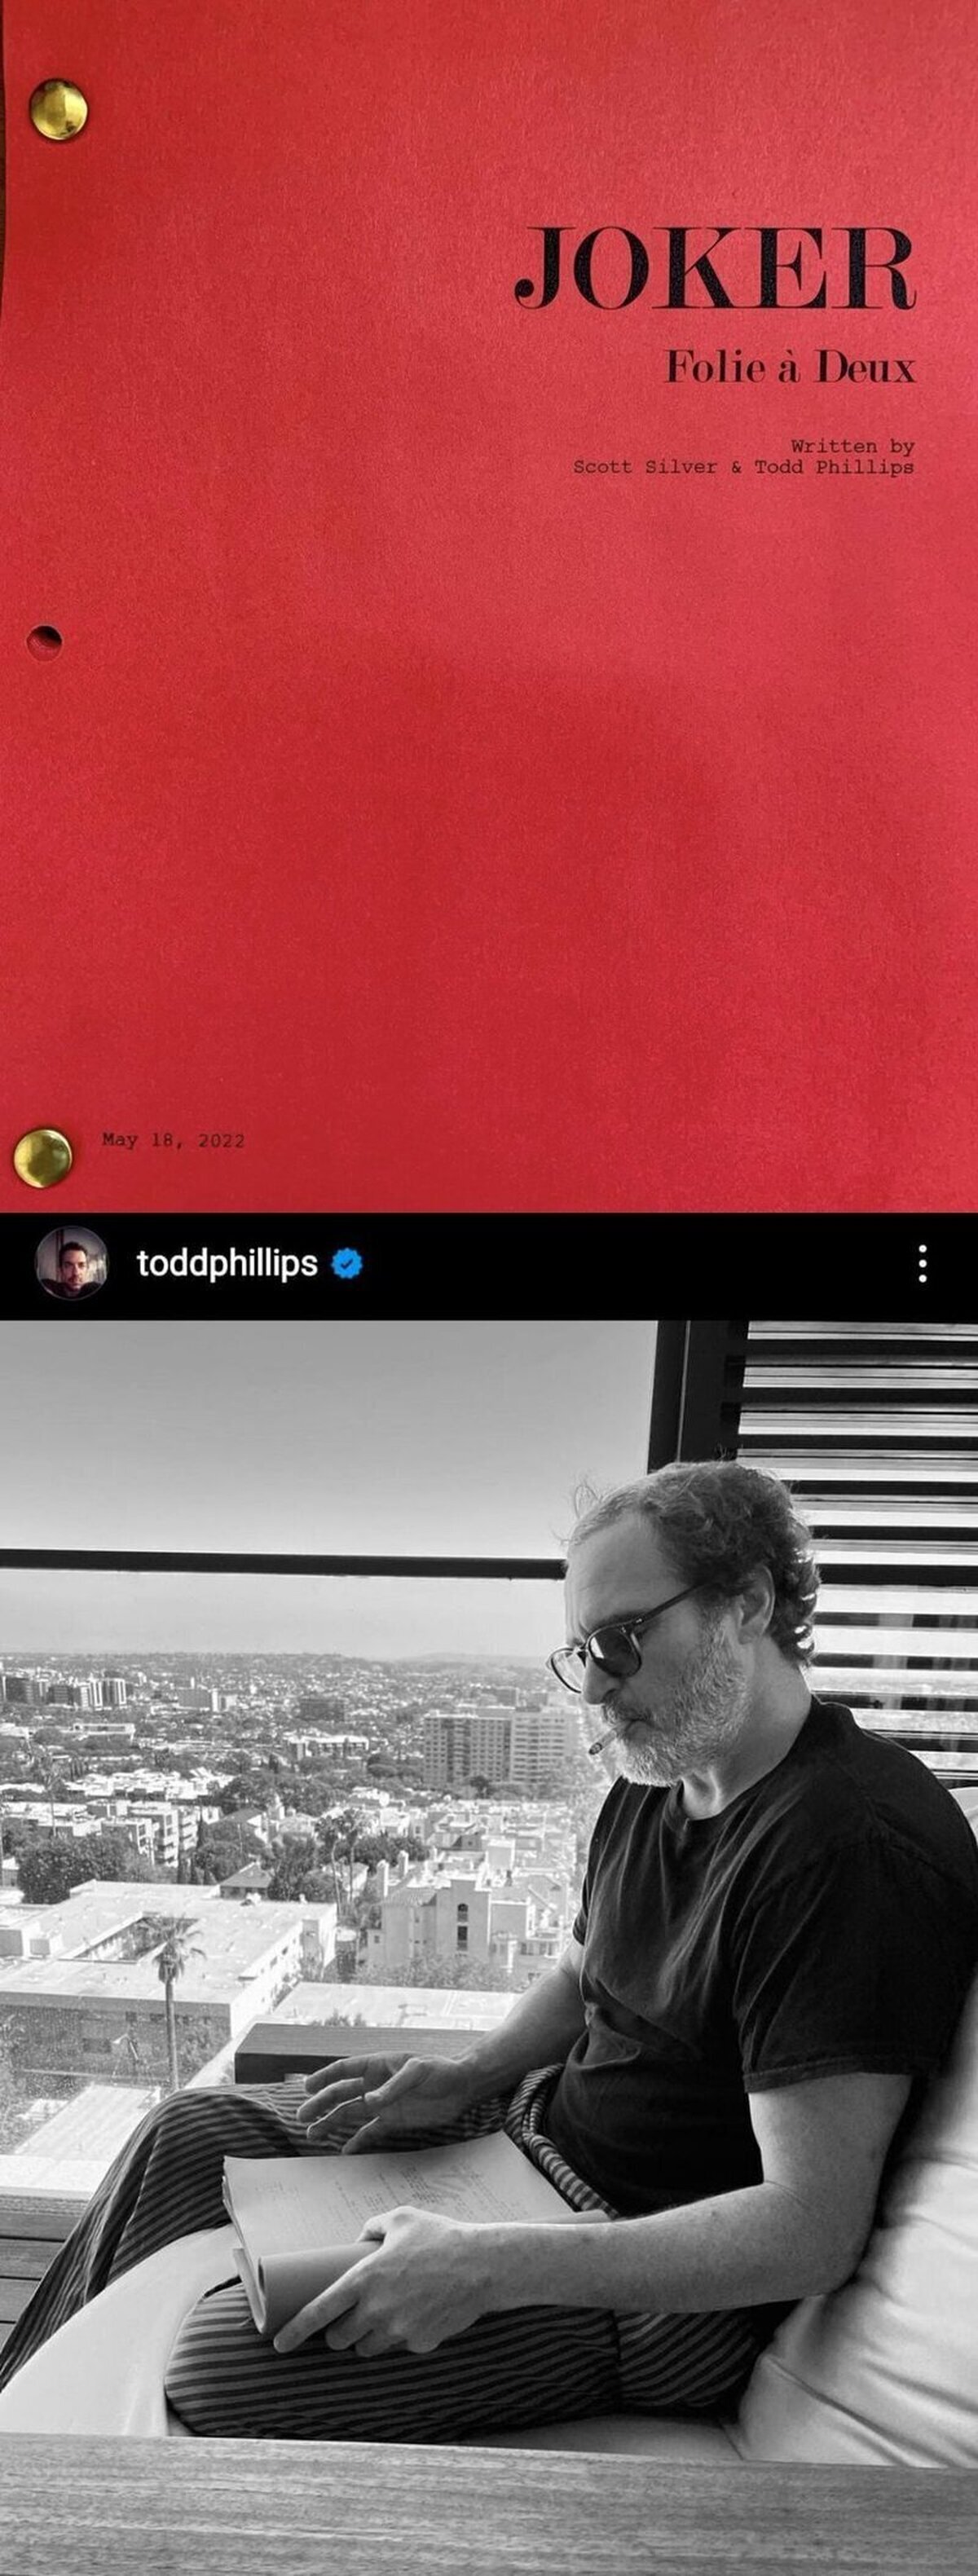 El director Todd Phillips comparte la portada del guion de #Joker2 y una foto de Joaquin Phoenix leyéndolo